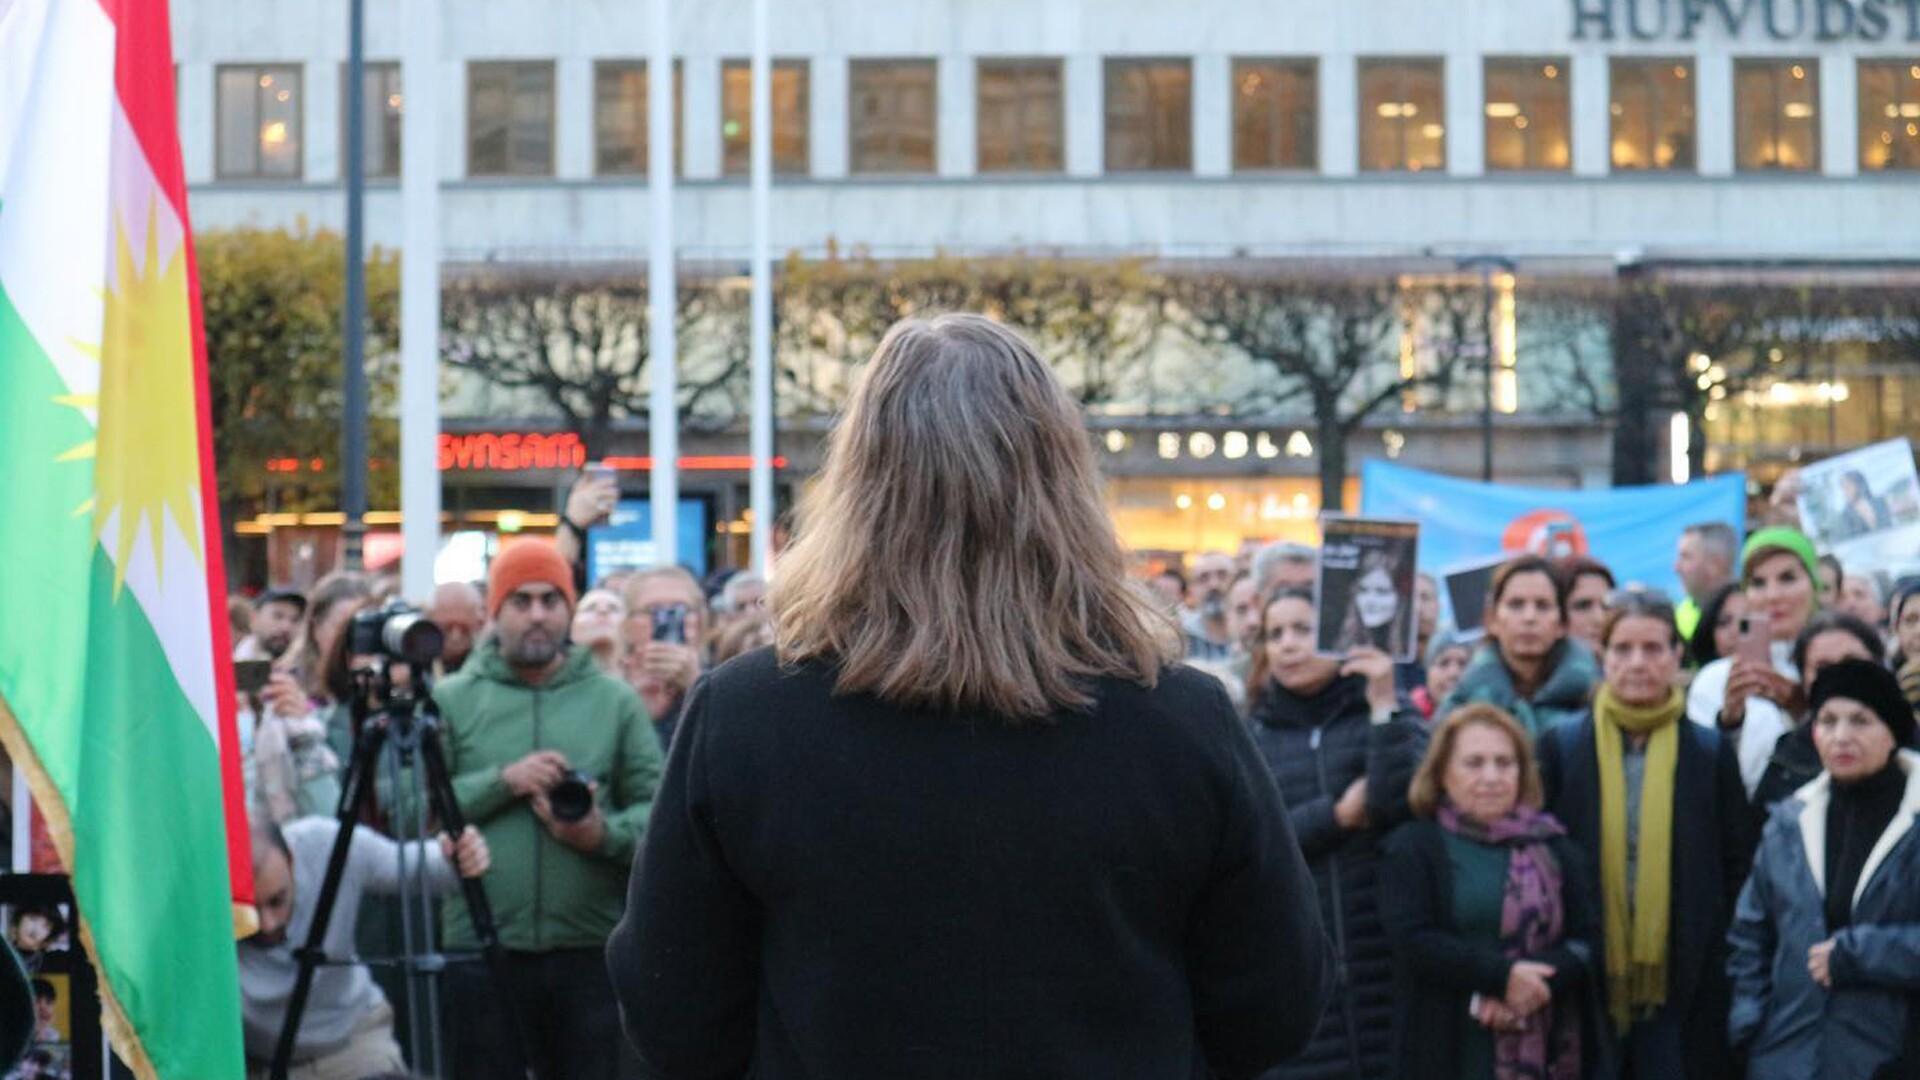 Malin Ragnegårds på en scen inför deltagare på demonstration.